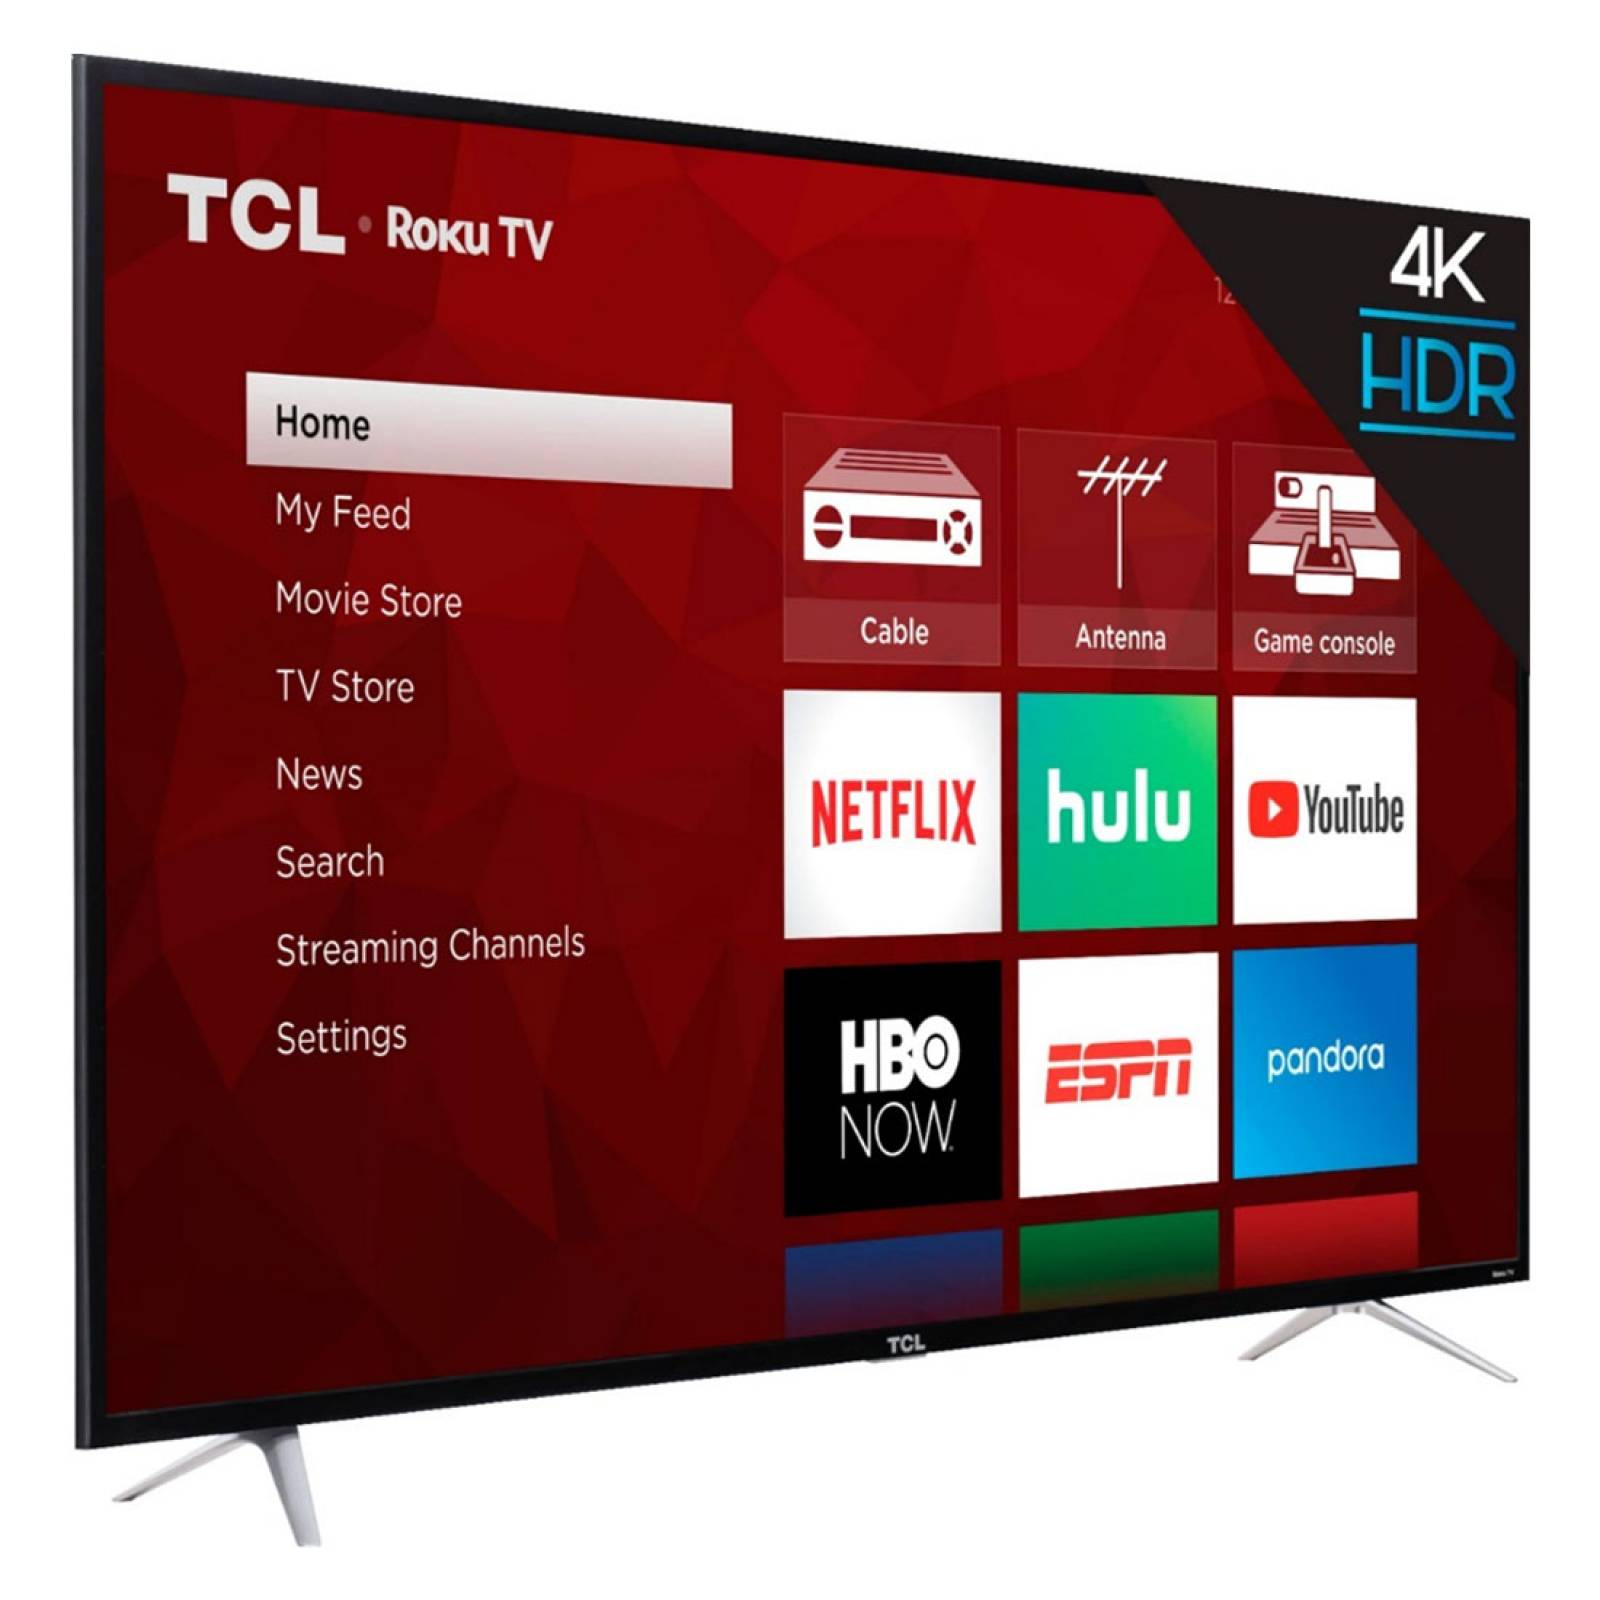 Smart TV Pantalla 65 Pulg 4K 3840X2160 FHD Roku TCL Reacondicionado